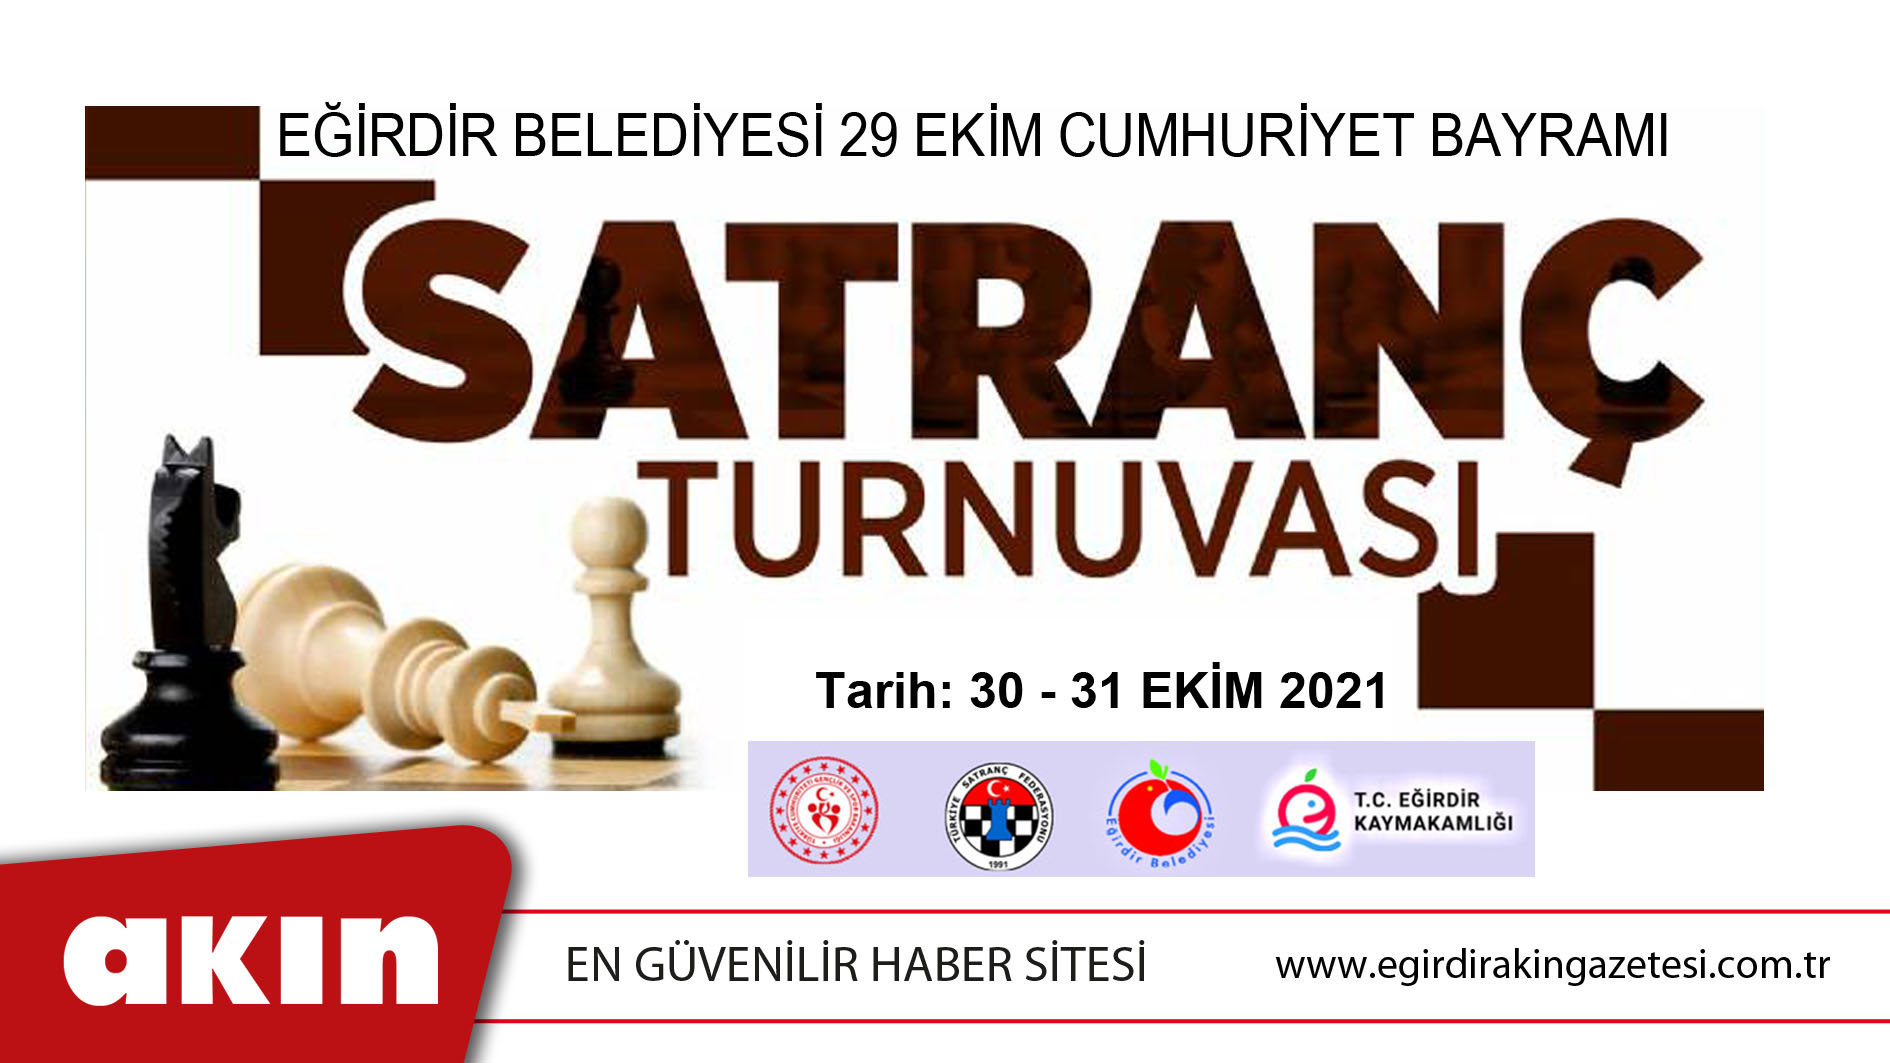 Eğirdir Belediyesi 29 Ekim Cumhuriyet Bayramı Satranç Turnuvası